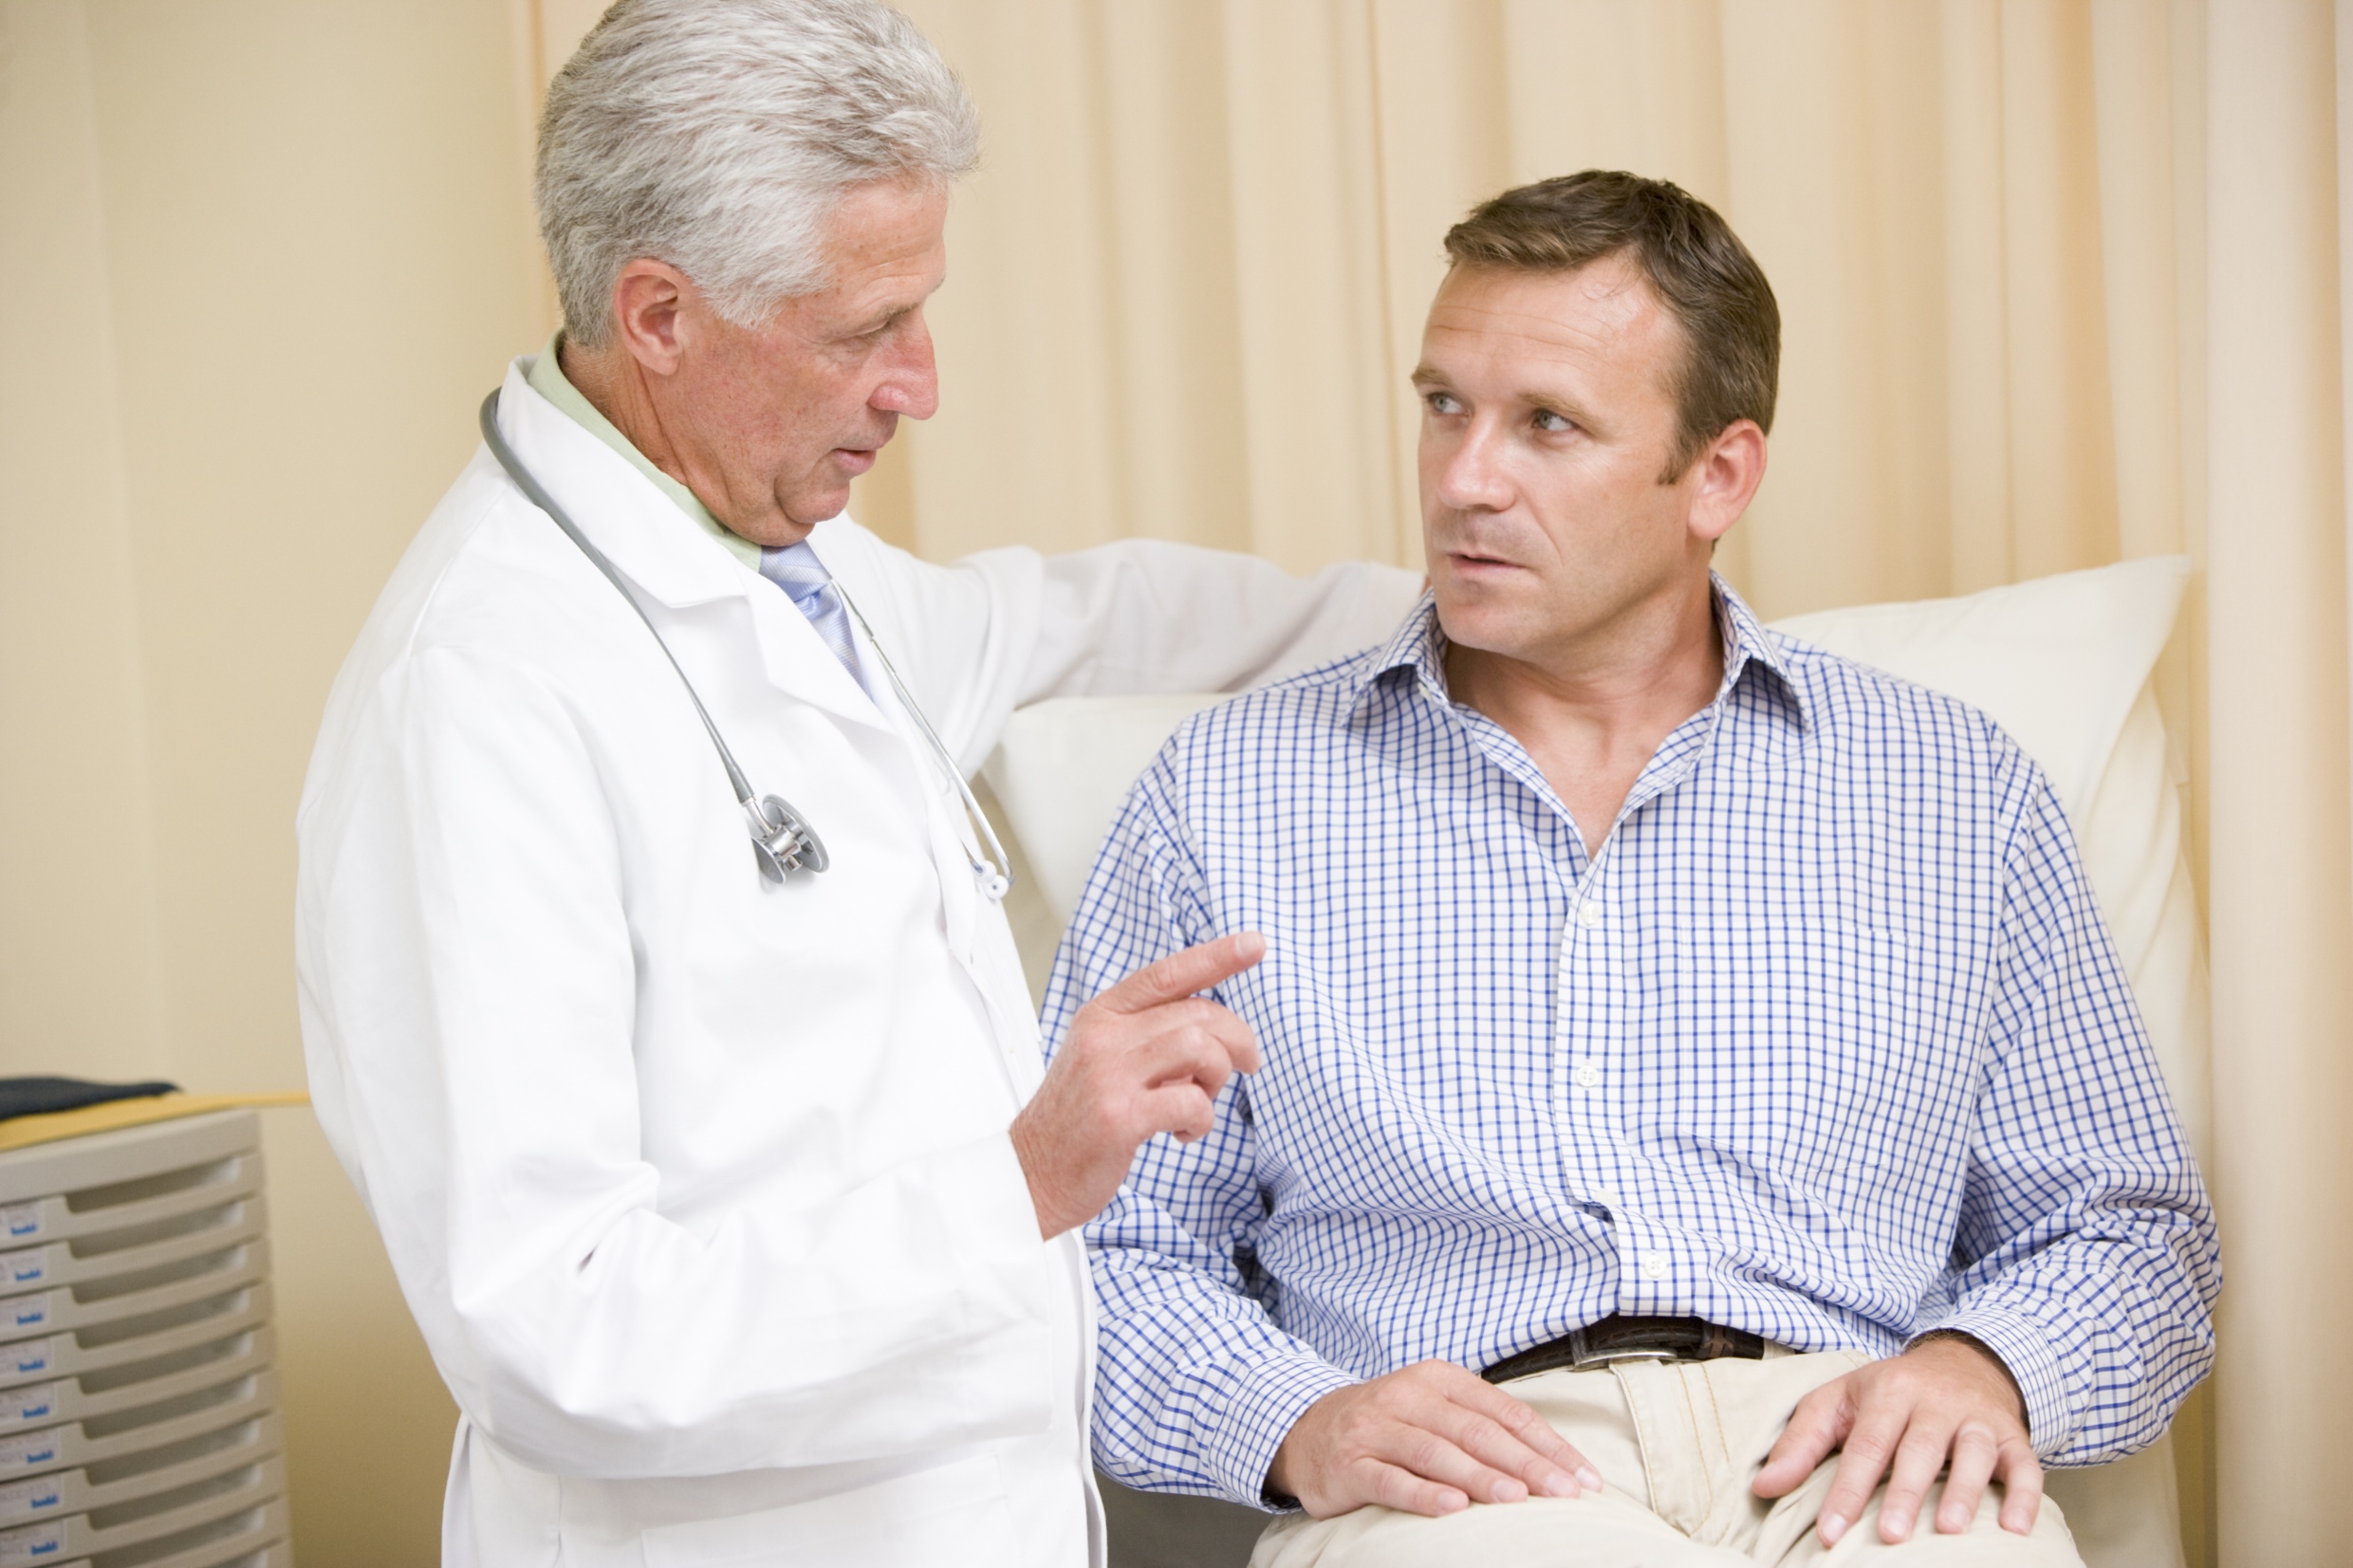 Temerea bărbaților. Cum prevenim inflamarea prostatei?